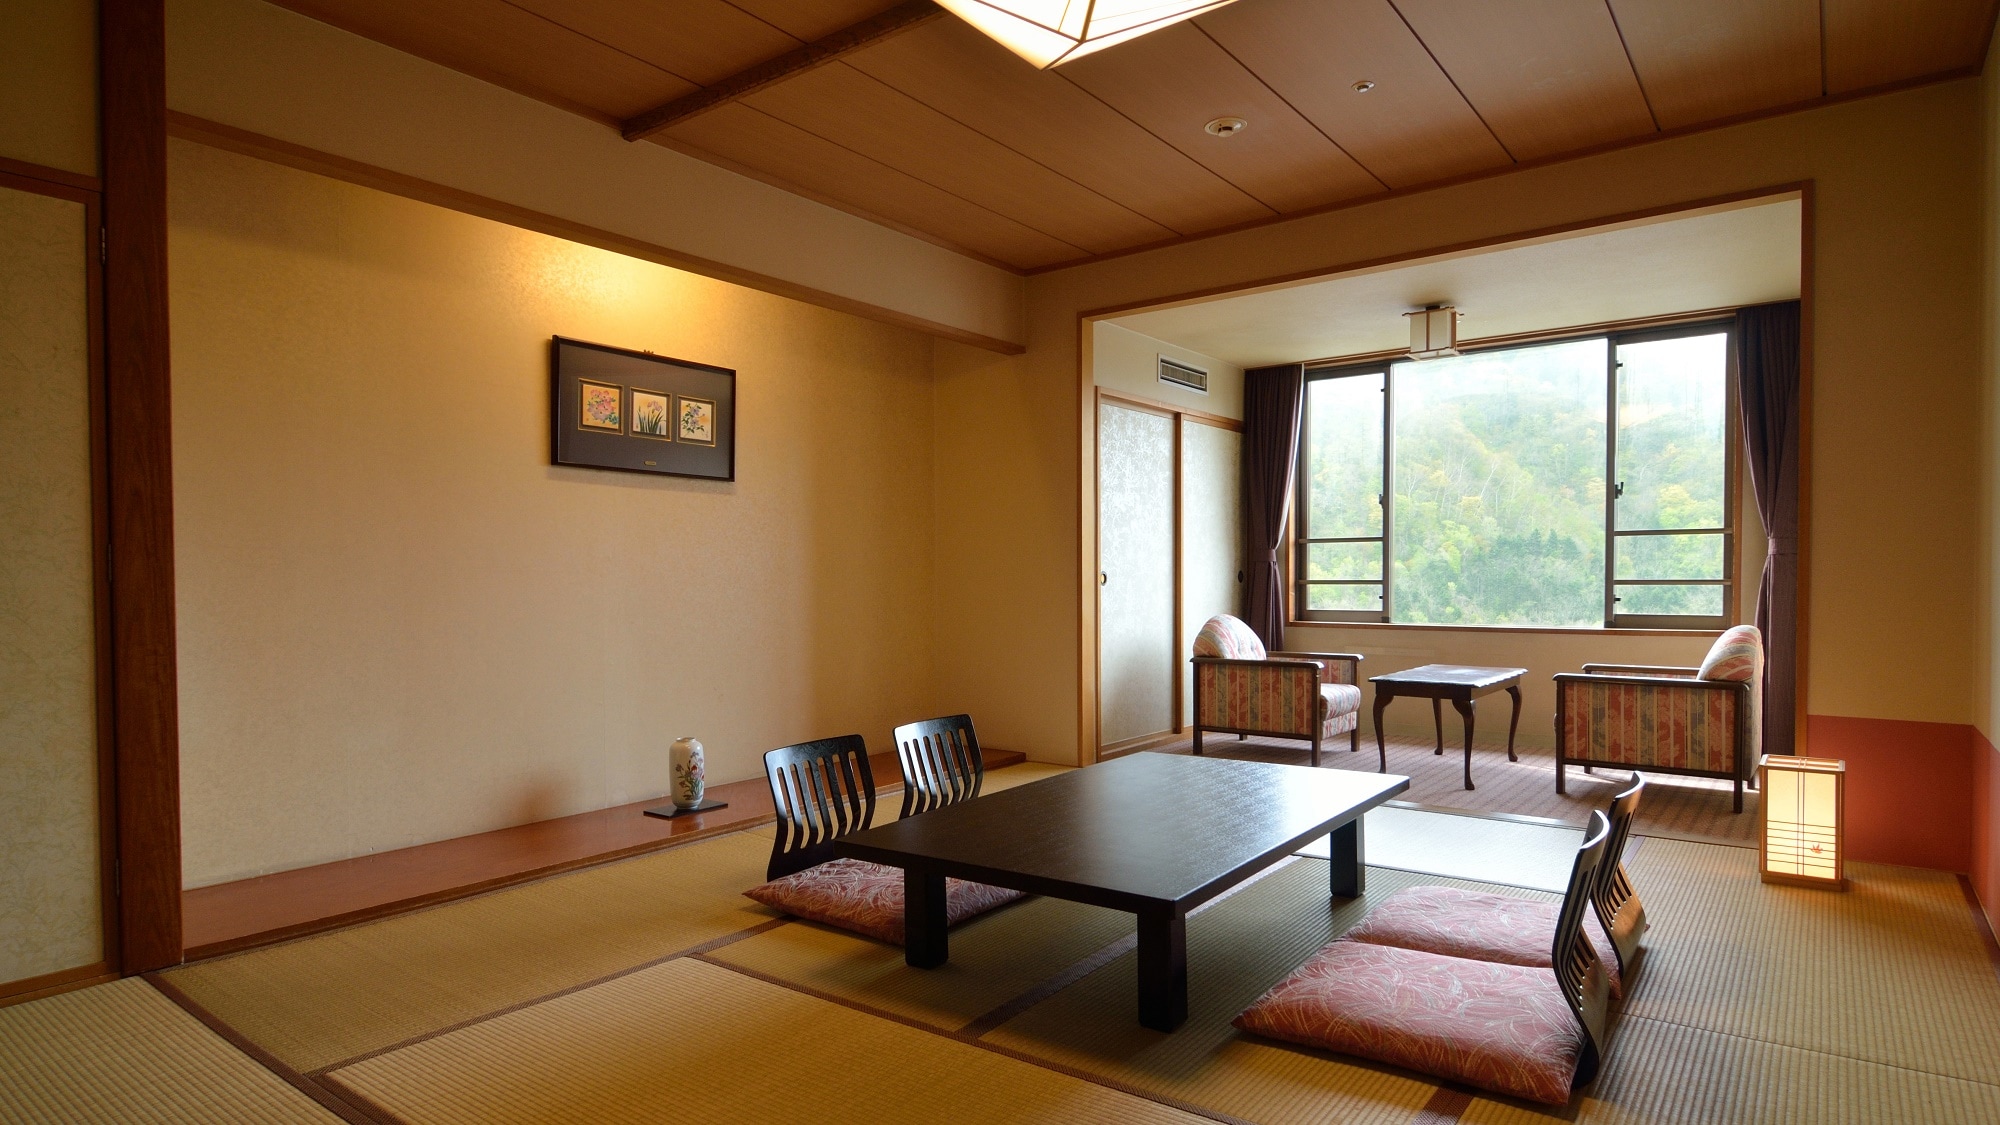 【日式房间10张榻榻米】阳台是靠窗的2张榻榻米左右。在充满开放感的房间里享受轻松的度假时光。